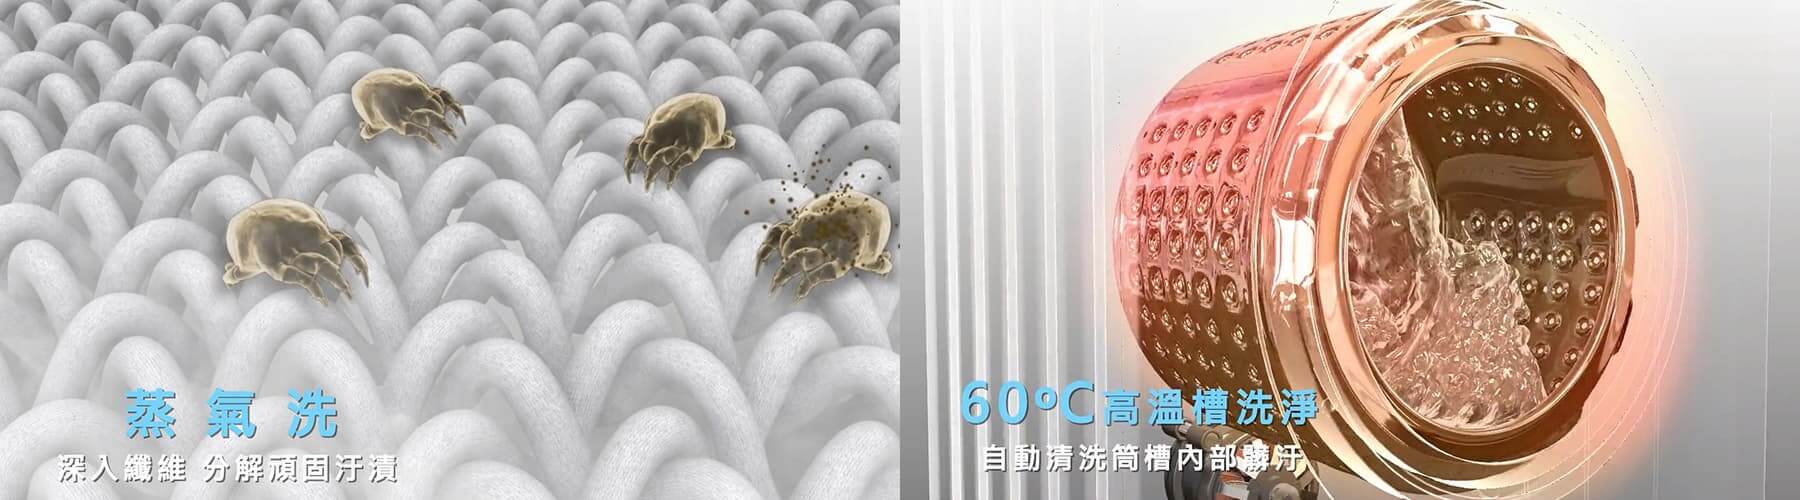 HERAN蒸氣洗滾筒式洗衣機產品介紹3D動畫影片-4